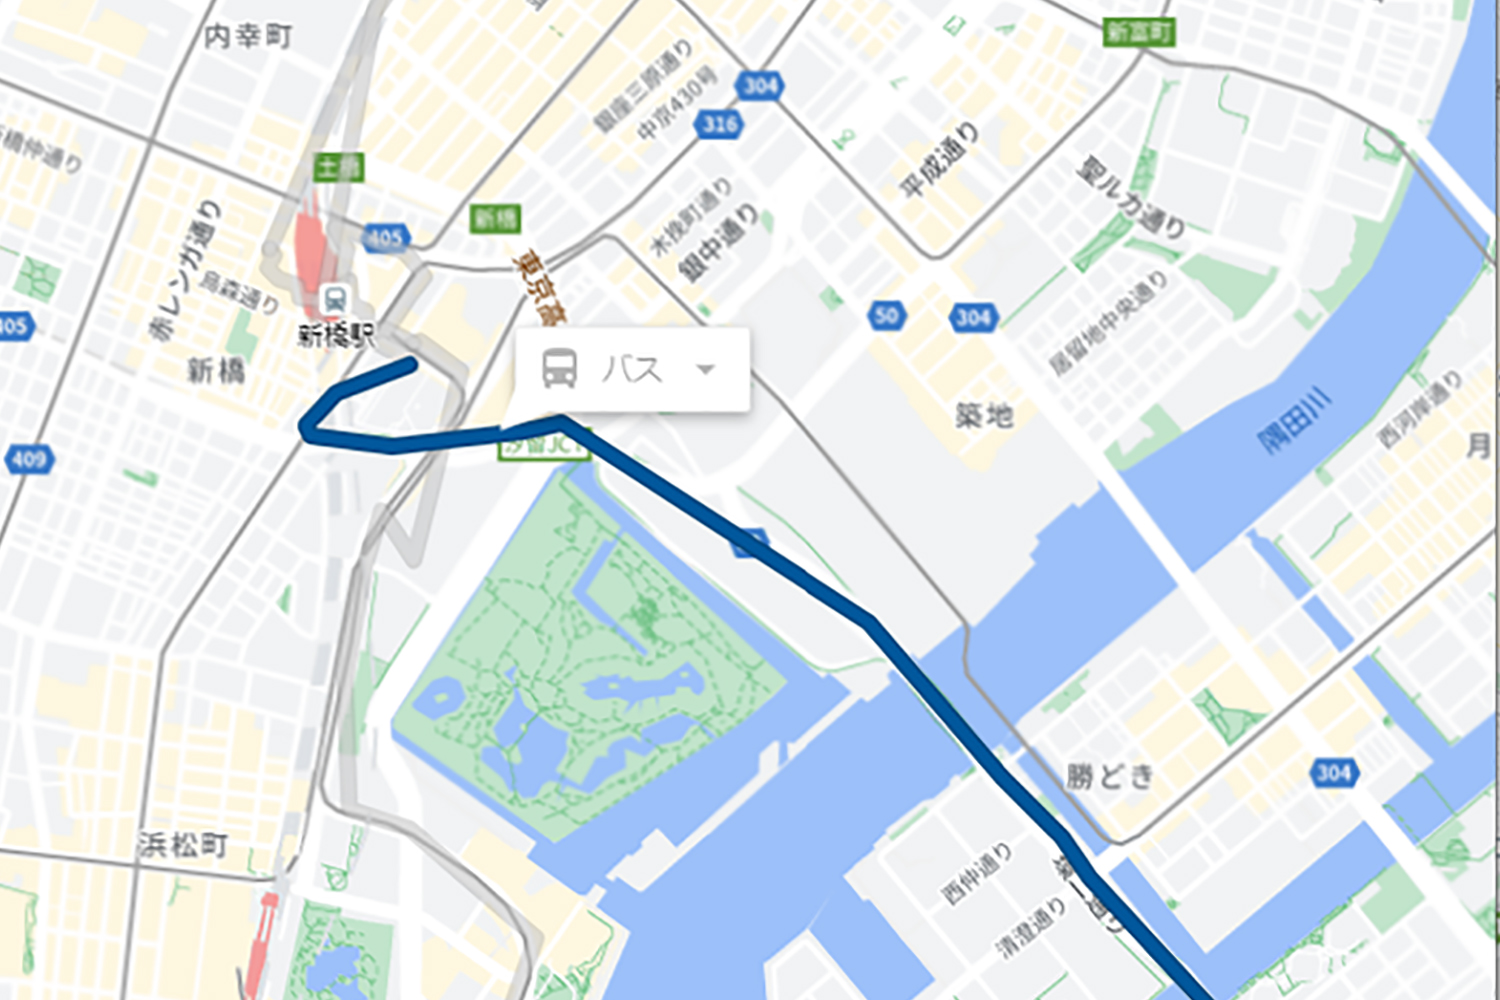 東京BRT トンネルルート